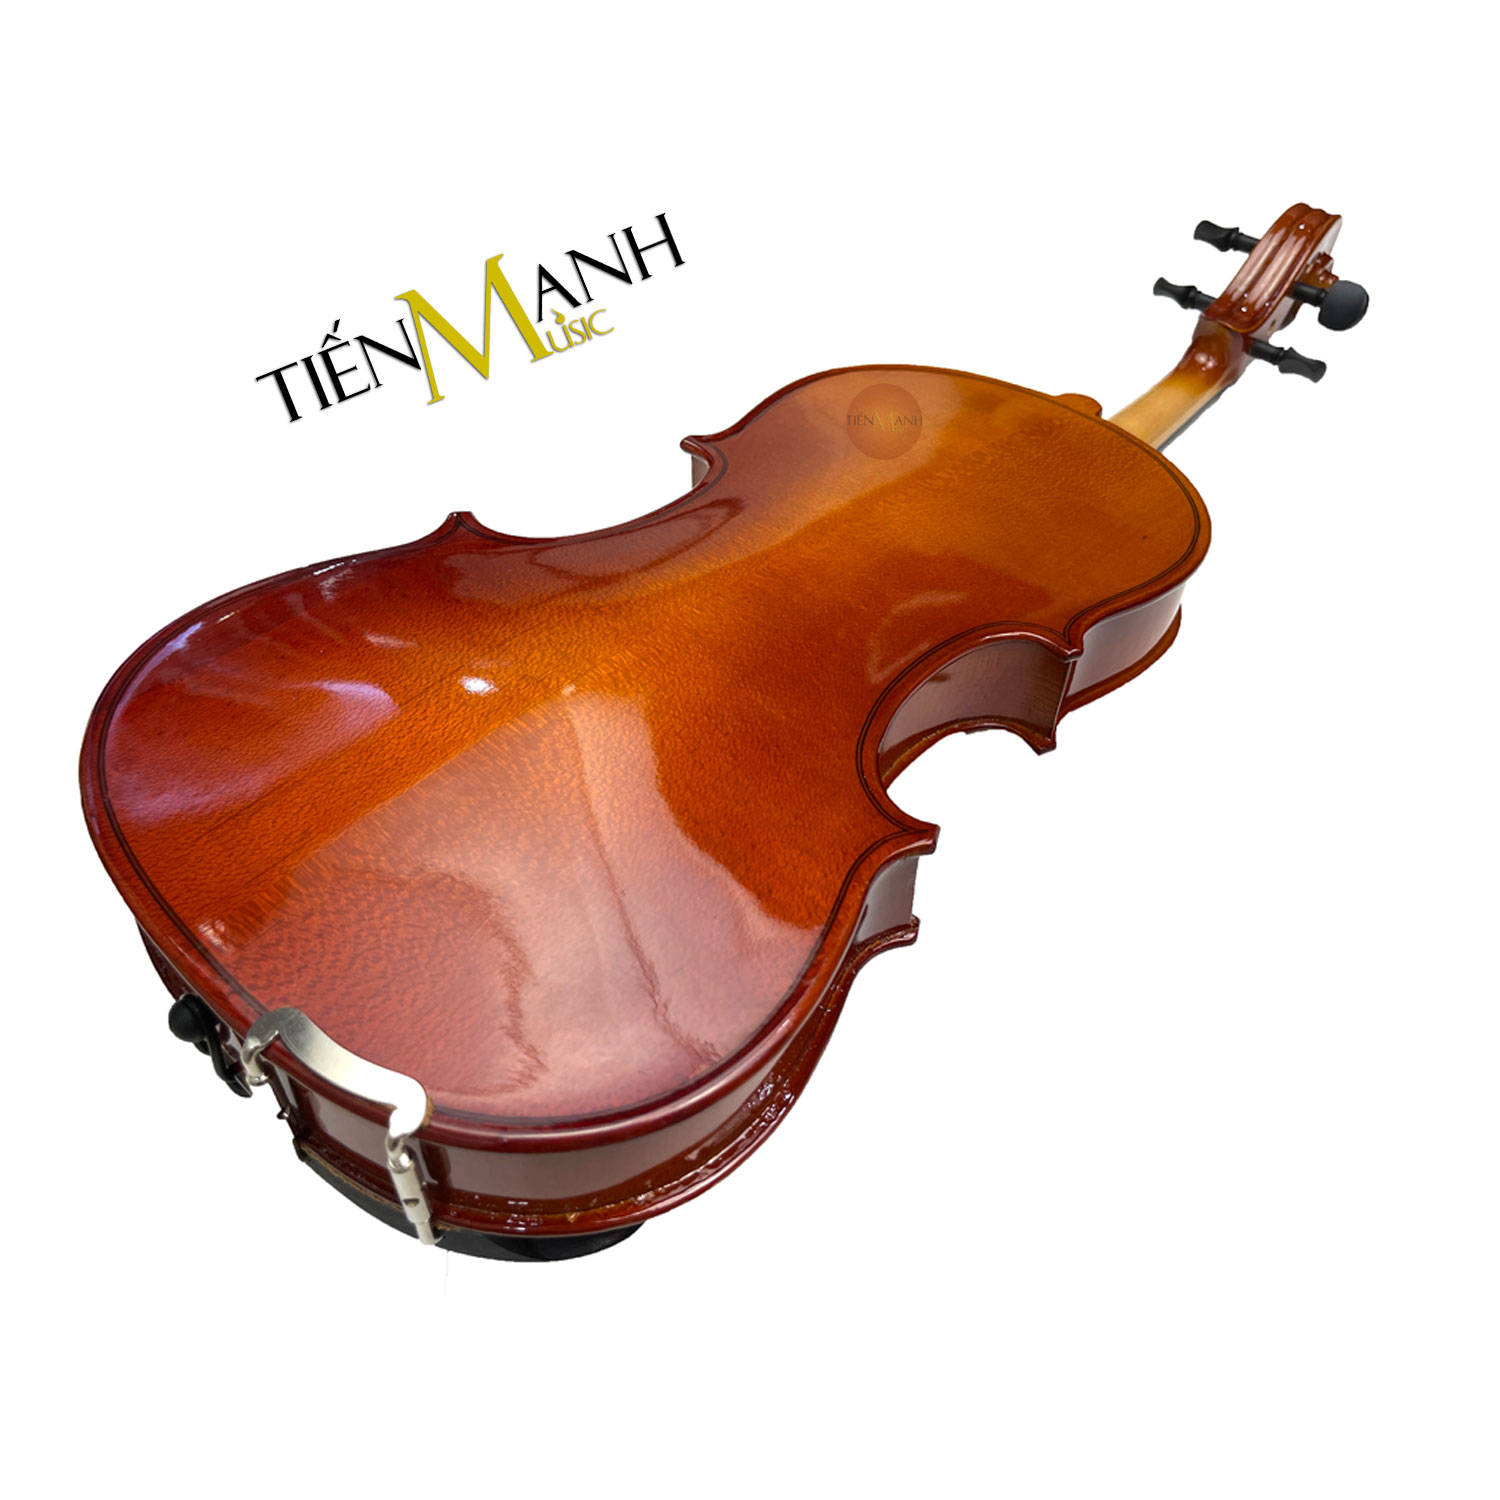 [Chính Hãng, Tặng Sticker] Đàn Violin Omebo RV205 Size 4/4, 3/4, 1/2, 1/4, 1/8, 1/10, 1/16 - Vĩ Cầm RV-205...